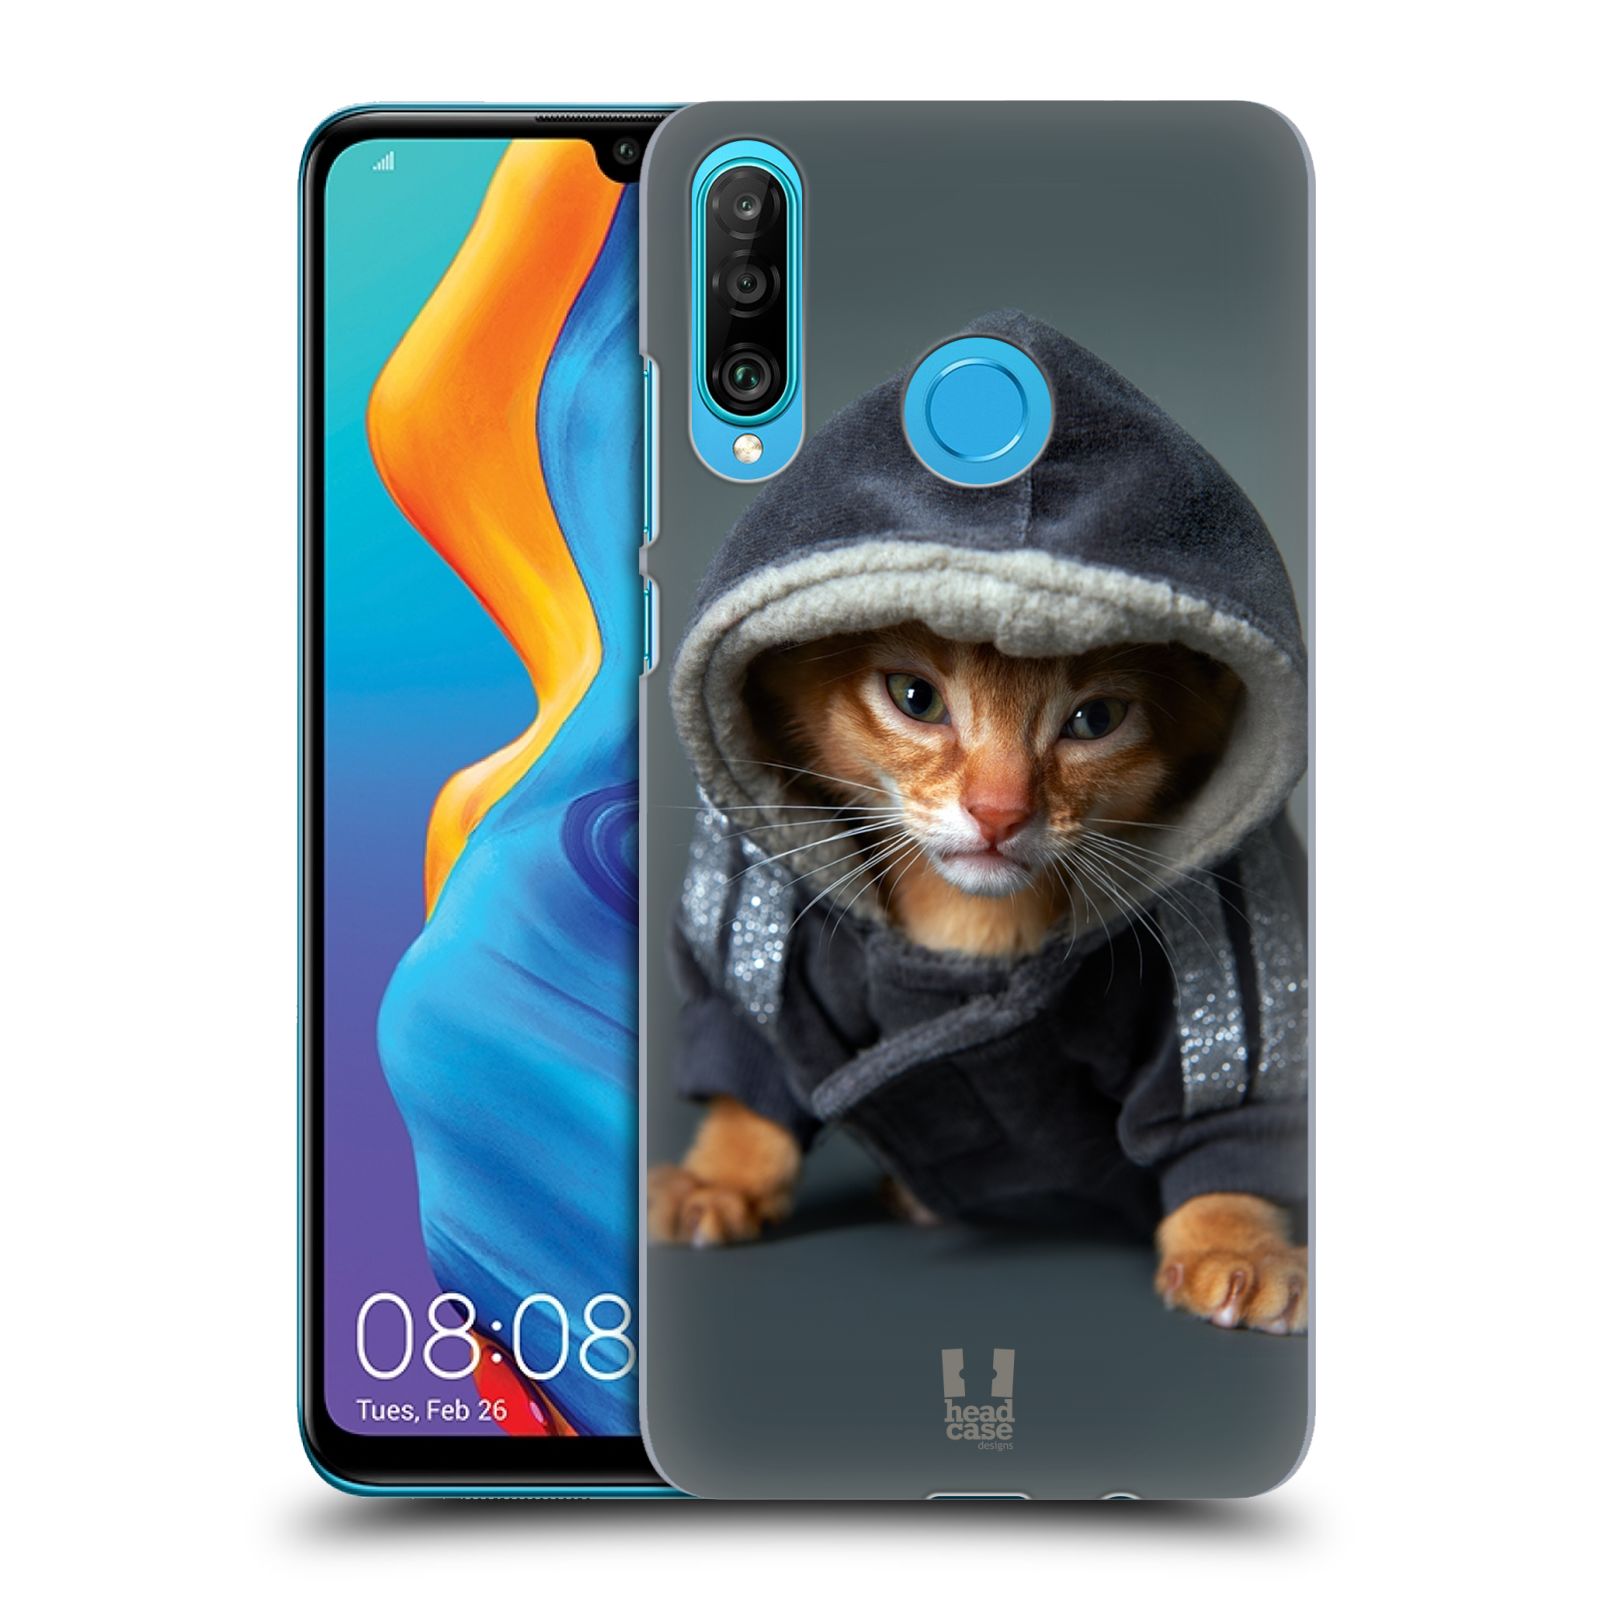 Pouzdro na mobil Huawei P30 LITE - HEAD CASE - vzor Legrační zvířátka kotě/kočička s kapucí